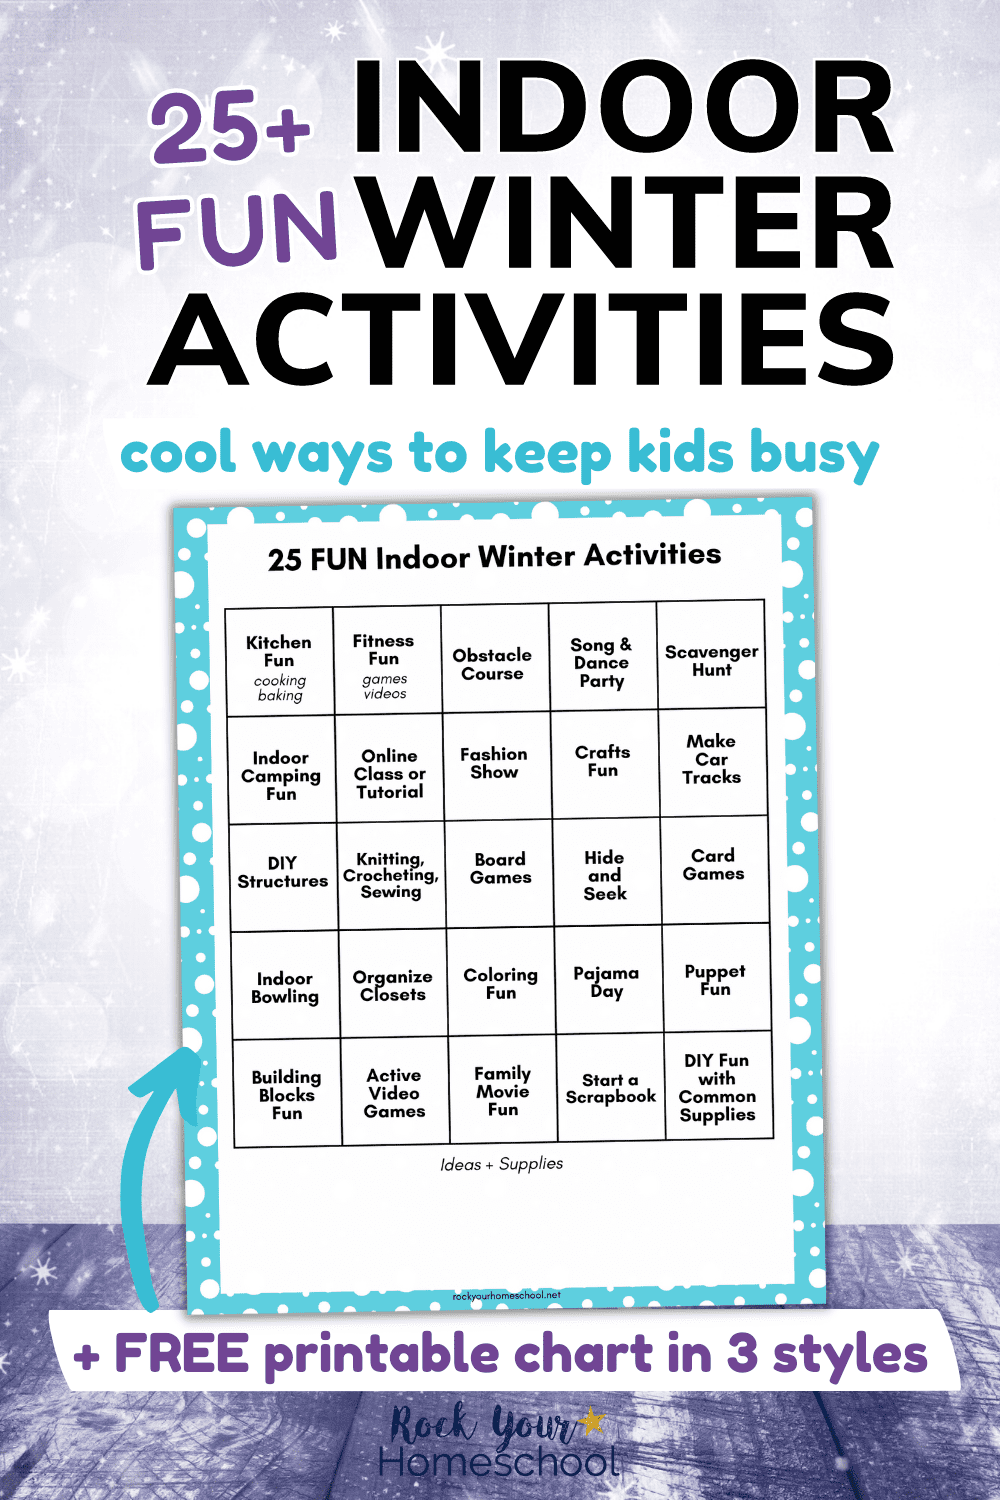 25+ Indoor Winter Activities: Simple & Fun Ways for Kids to Have a Blast